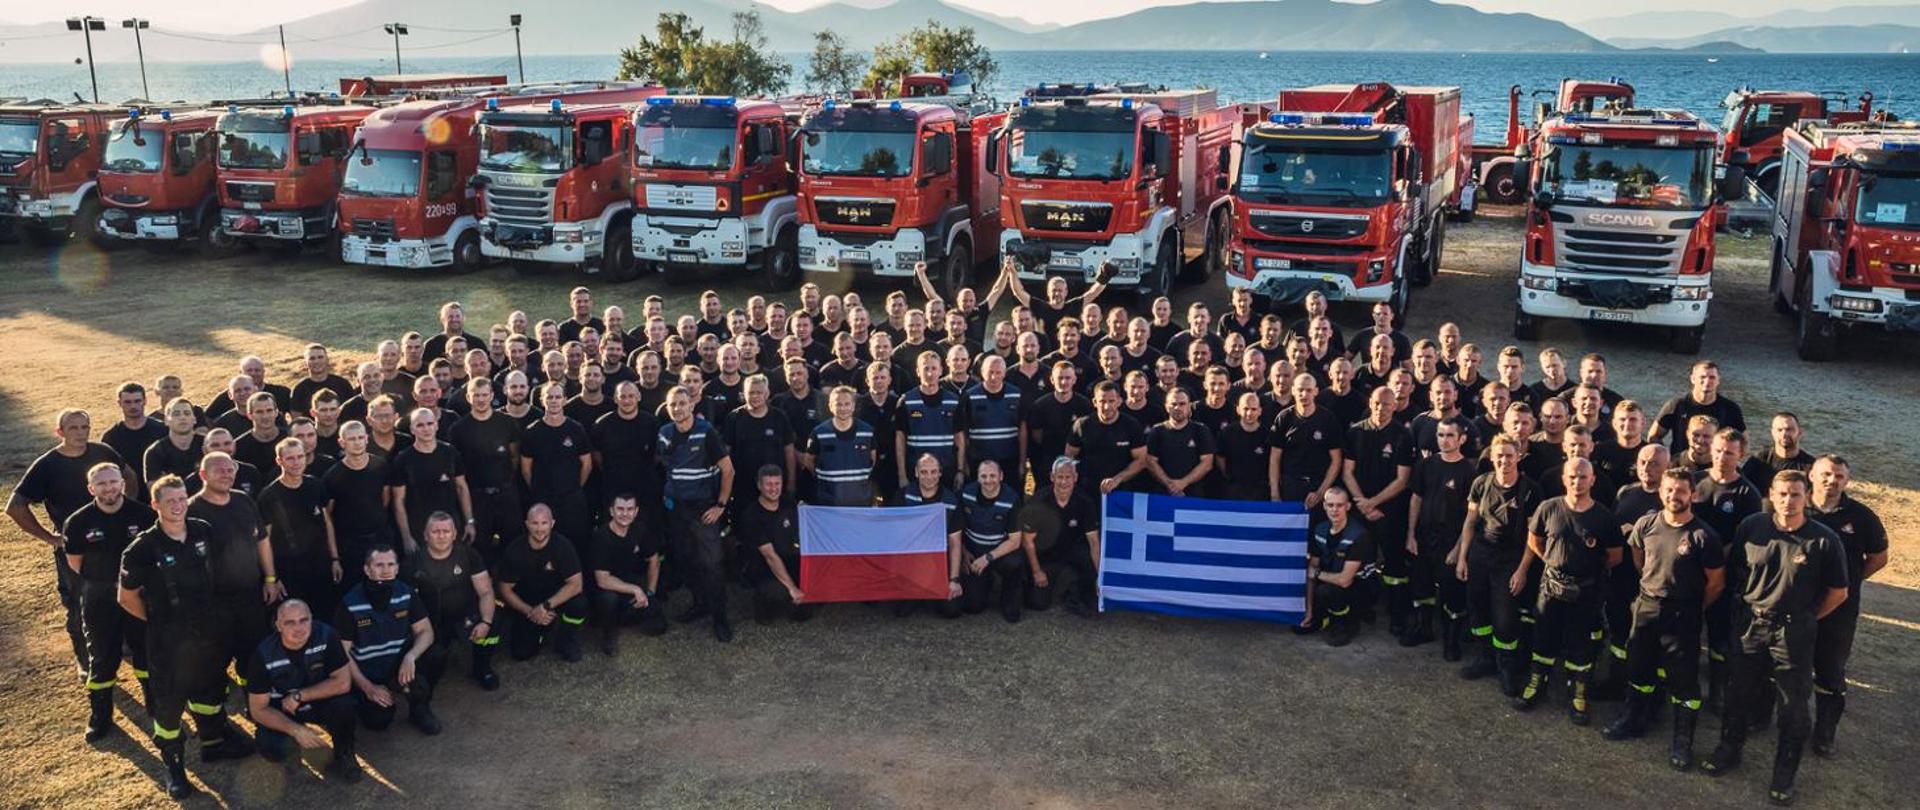 Grupa polskich i greckich strażaków ze swoimi flagami państwowymi na tle samochodów pożarniczych